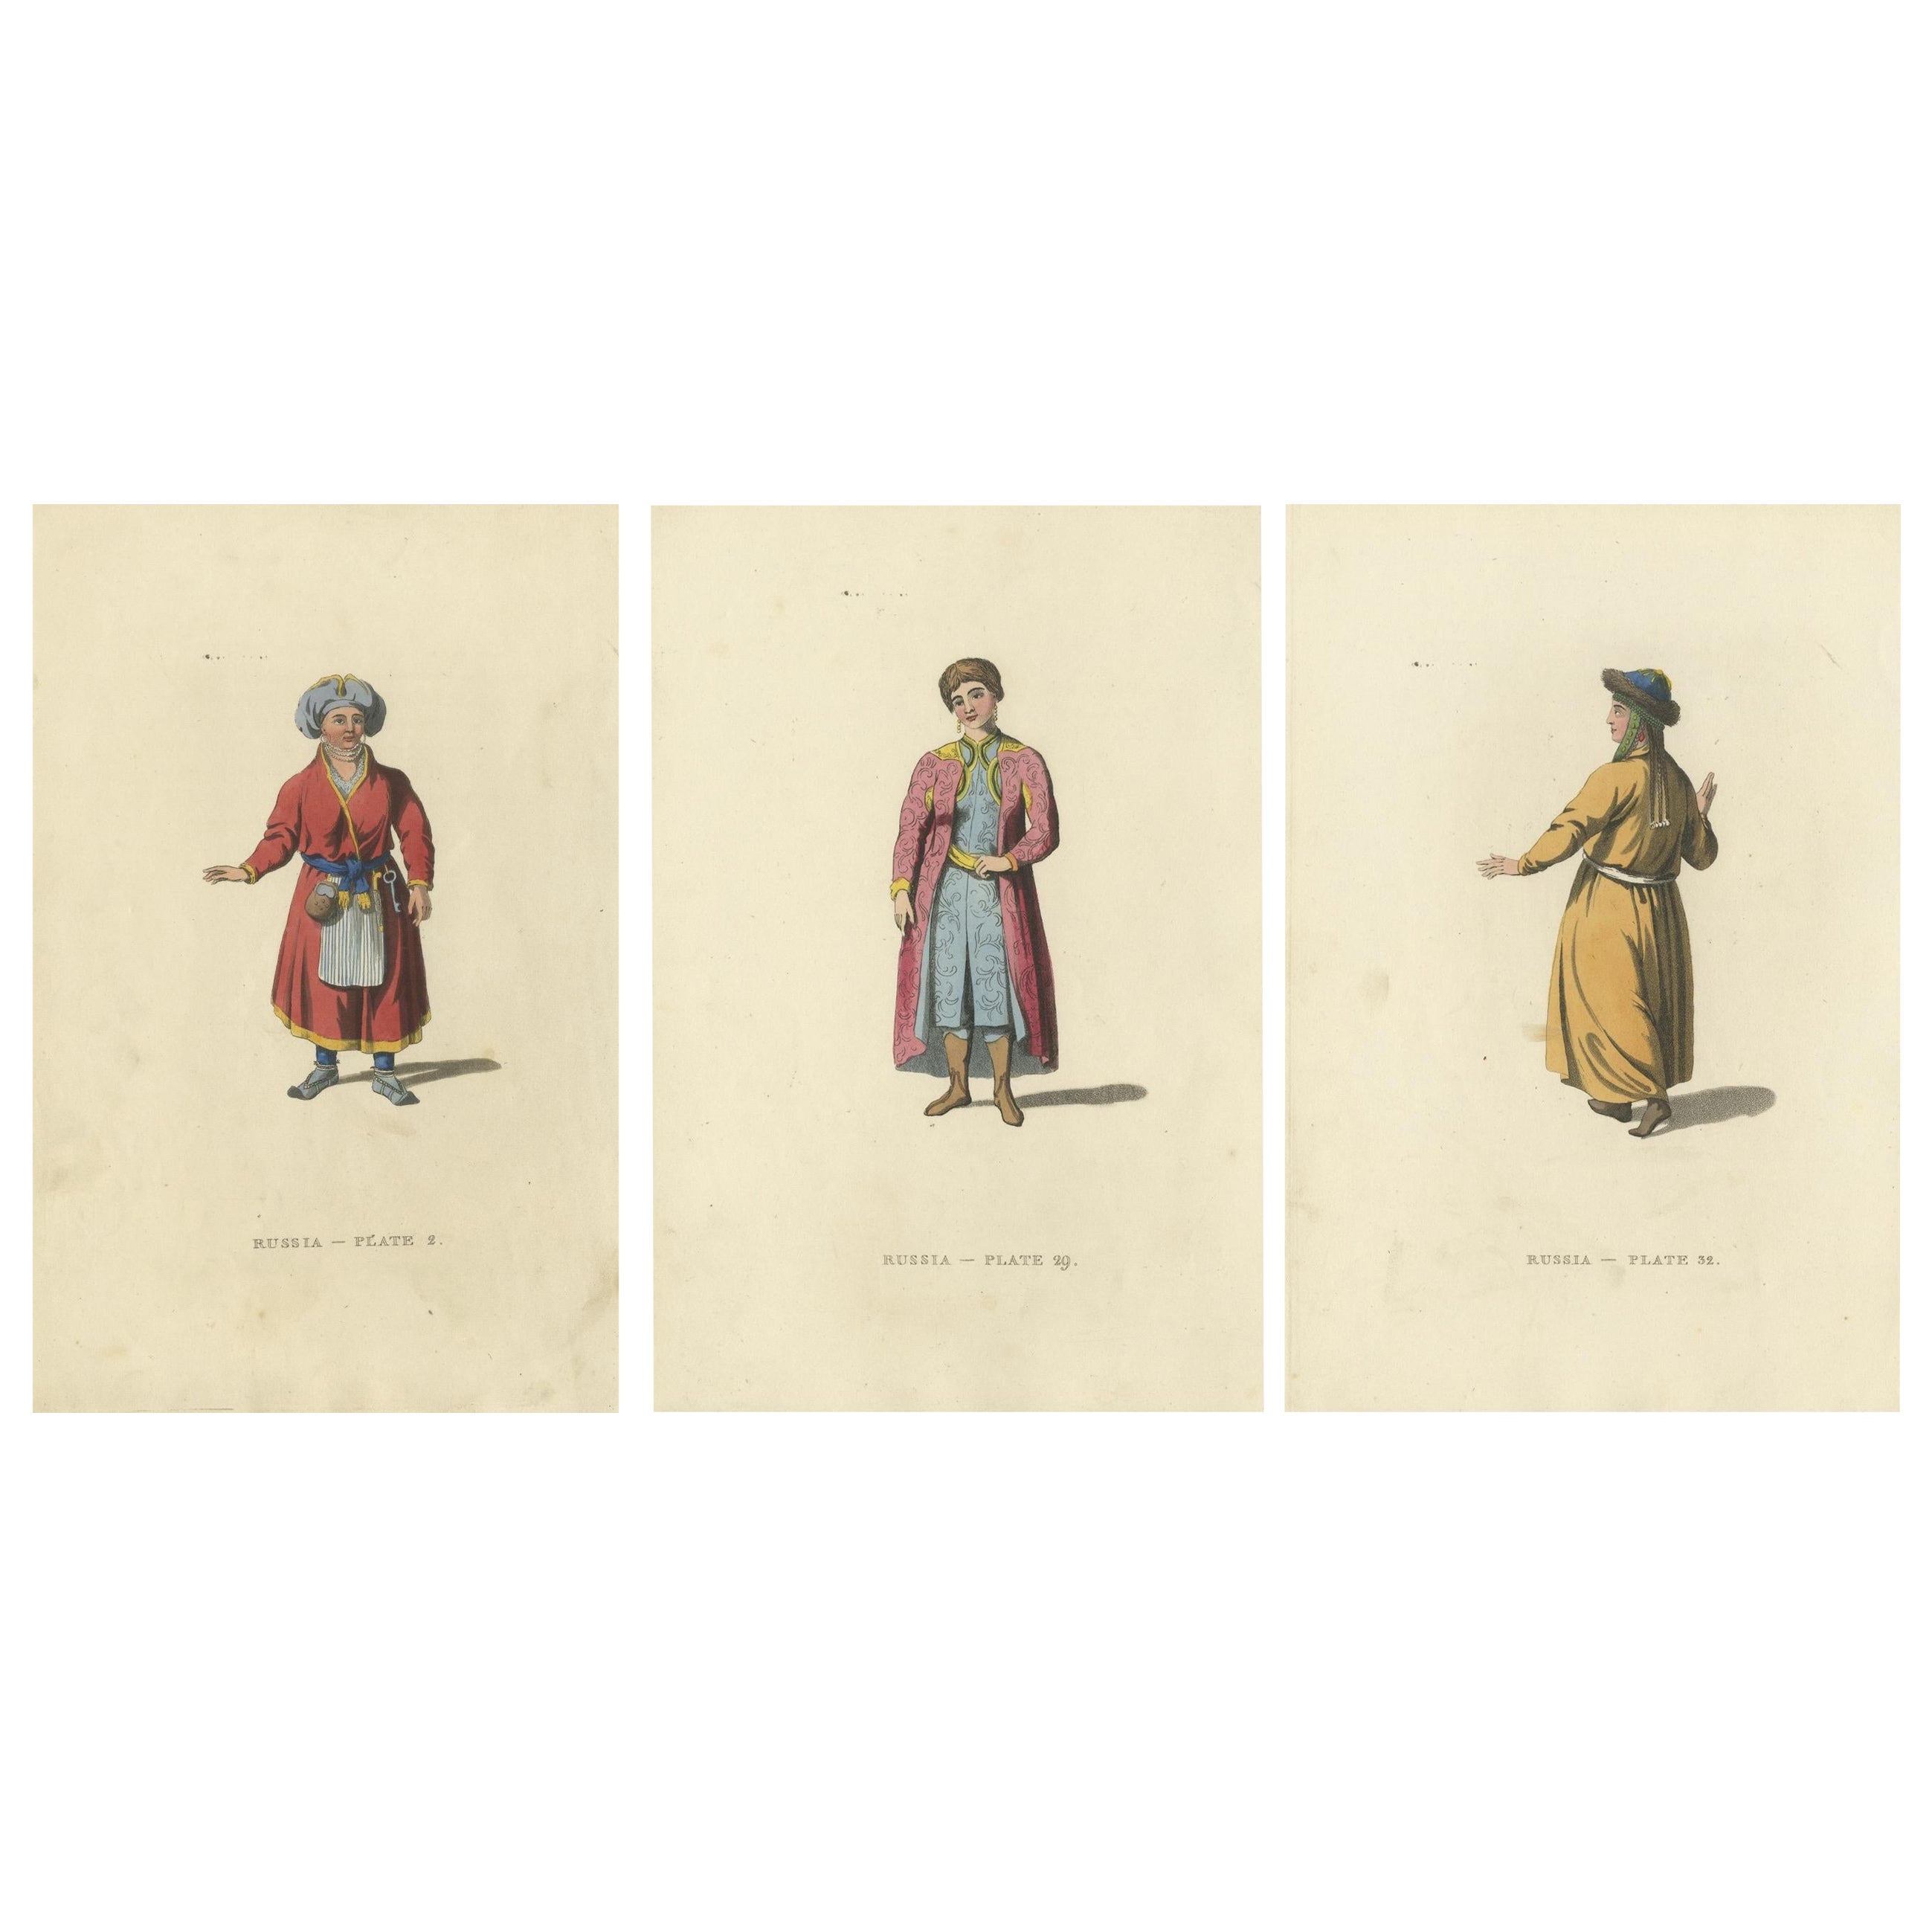 Tapisserie culturelle : tenue féminine traditionnelle de Russie du 19e siècle, 1814